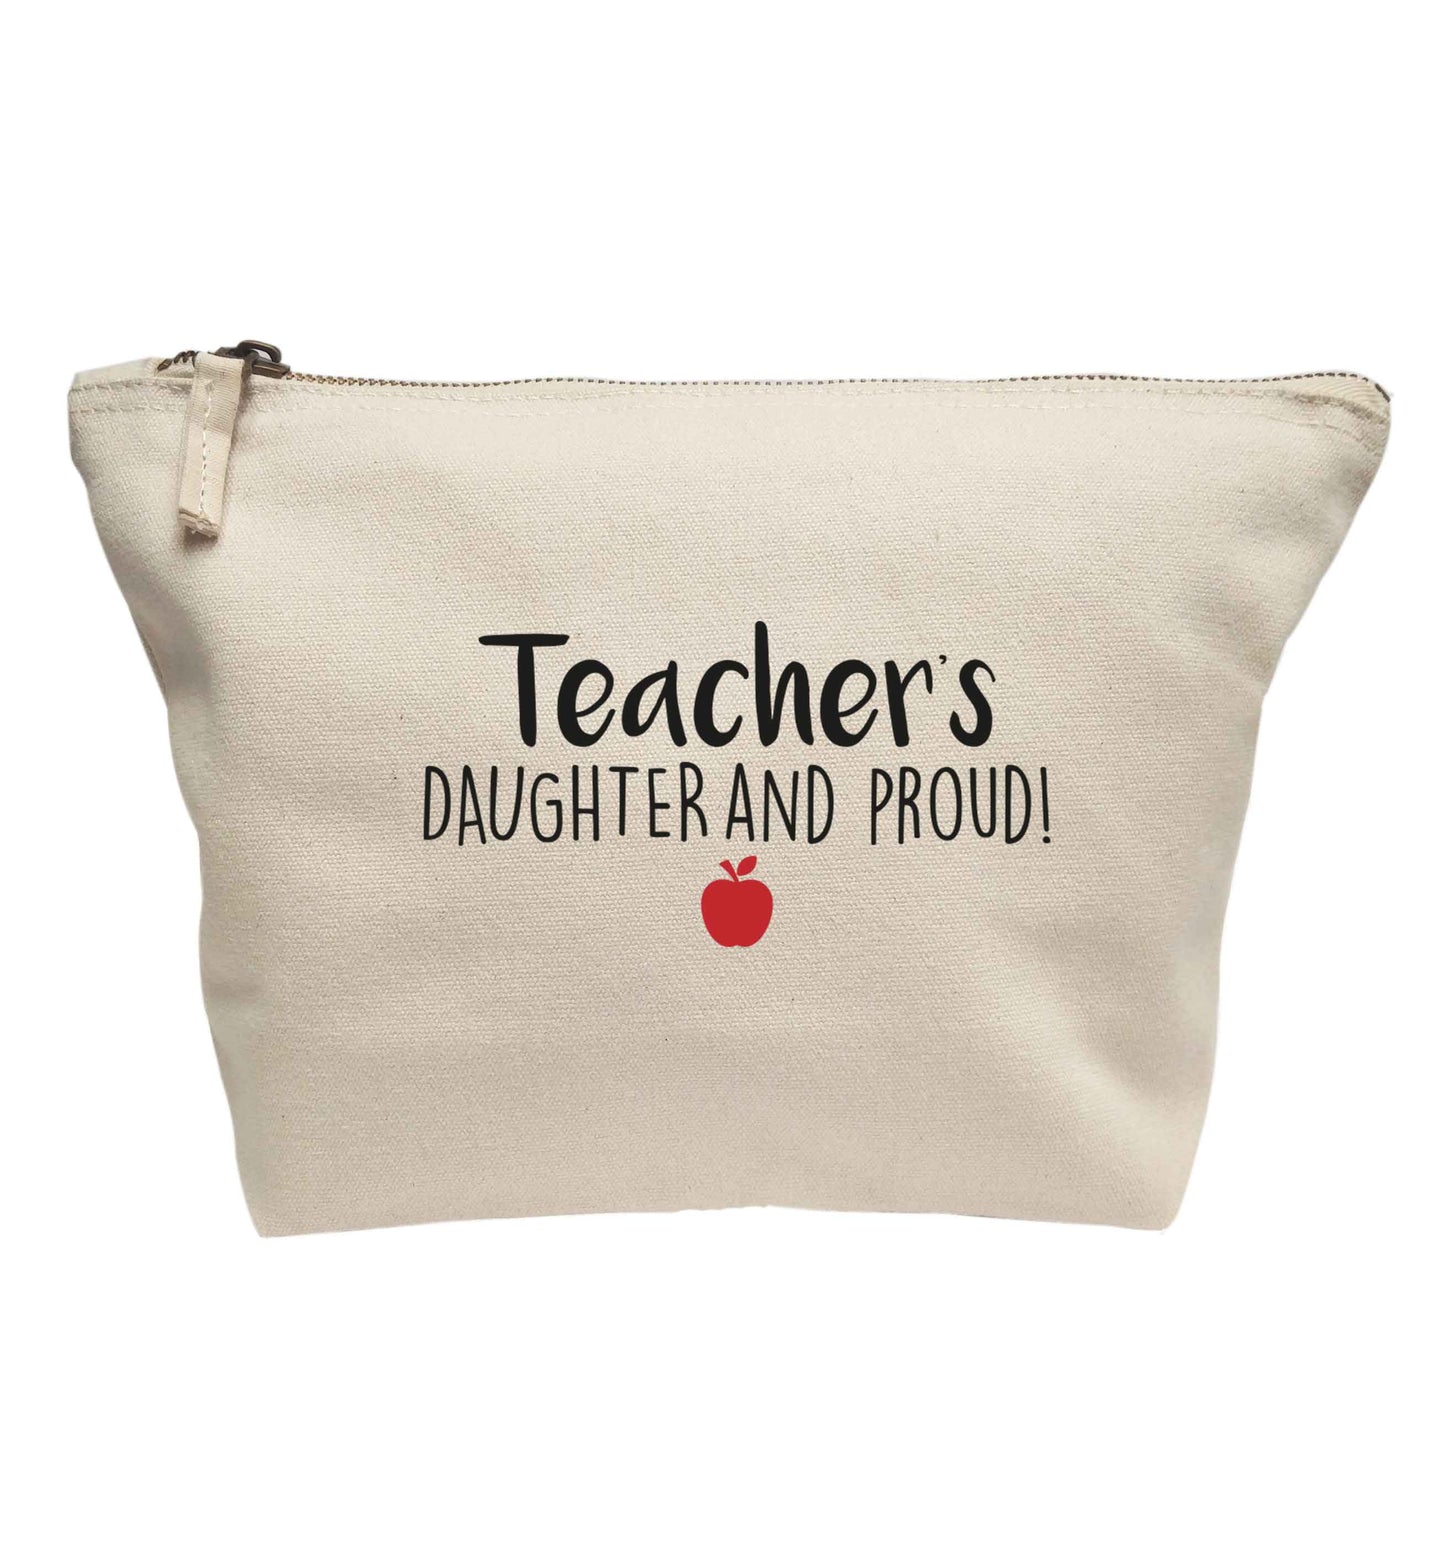 Teachers daughter and proud | Makeup / wash bag